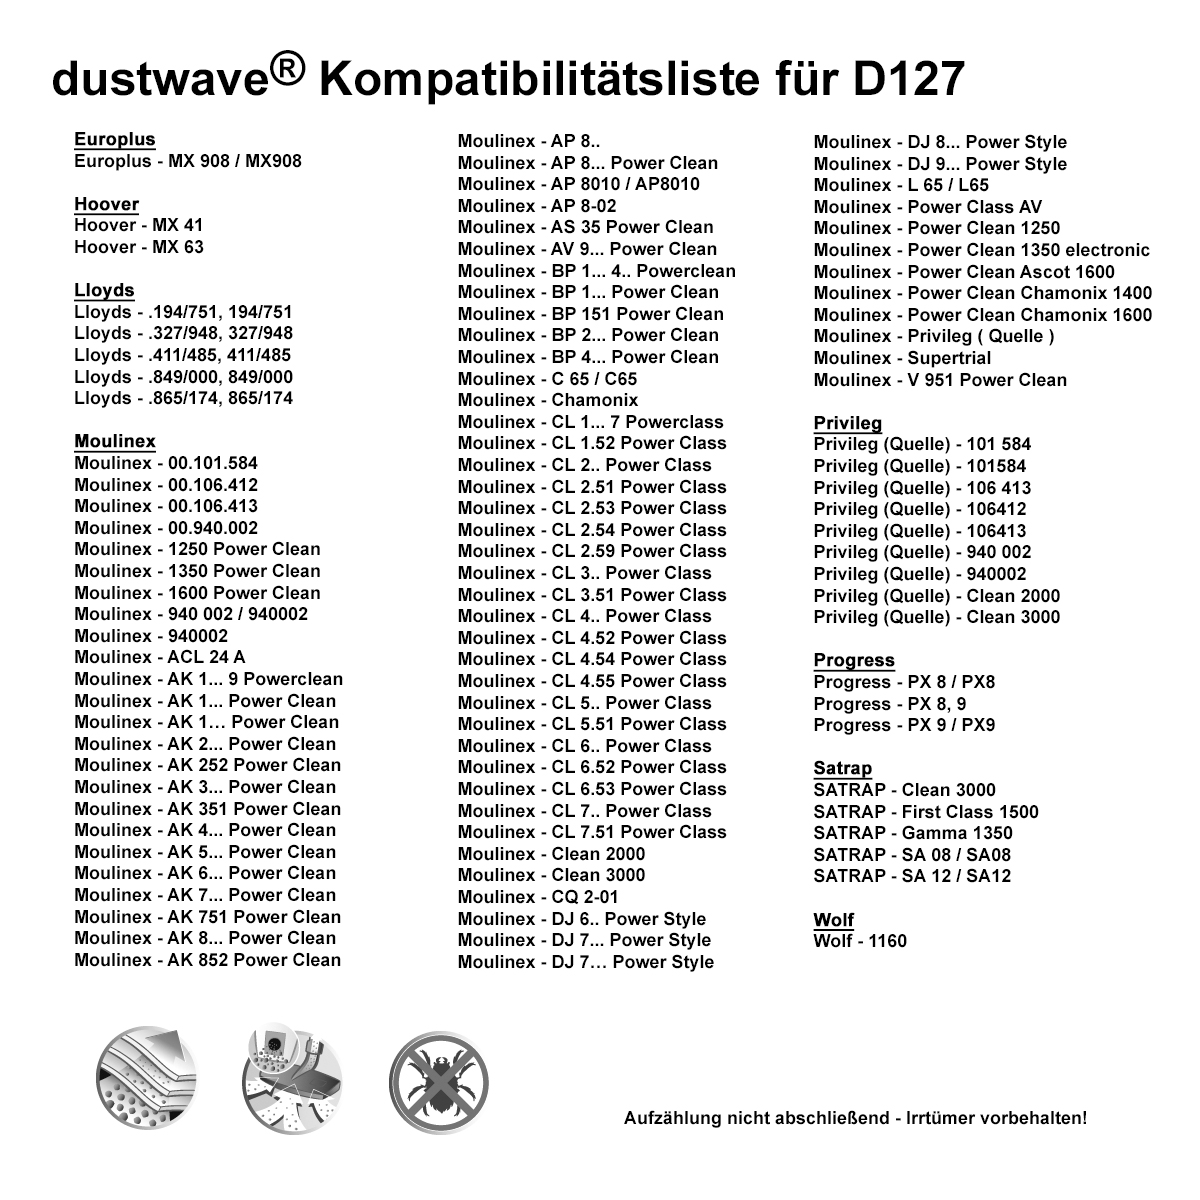 Dustwave® 1 Staubsaugerbeutel für Hoover MX 63 - hocheffizient, mehrlagiges Mikrovlies mit Hygieneverschluss - Made in Germany